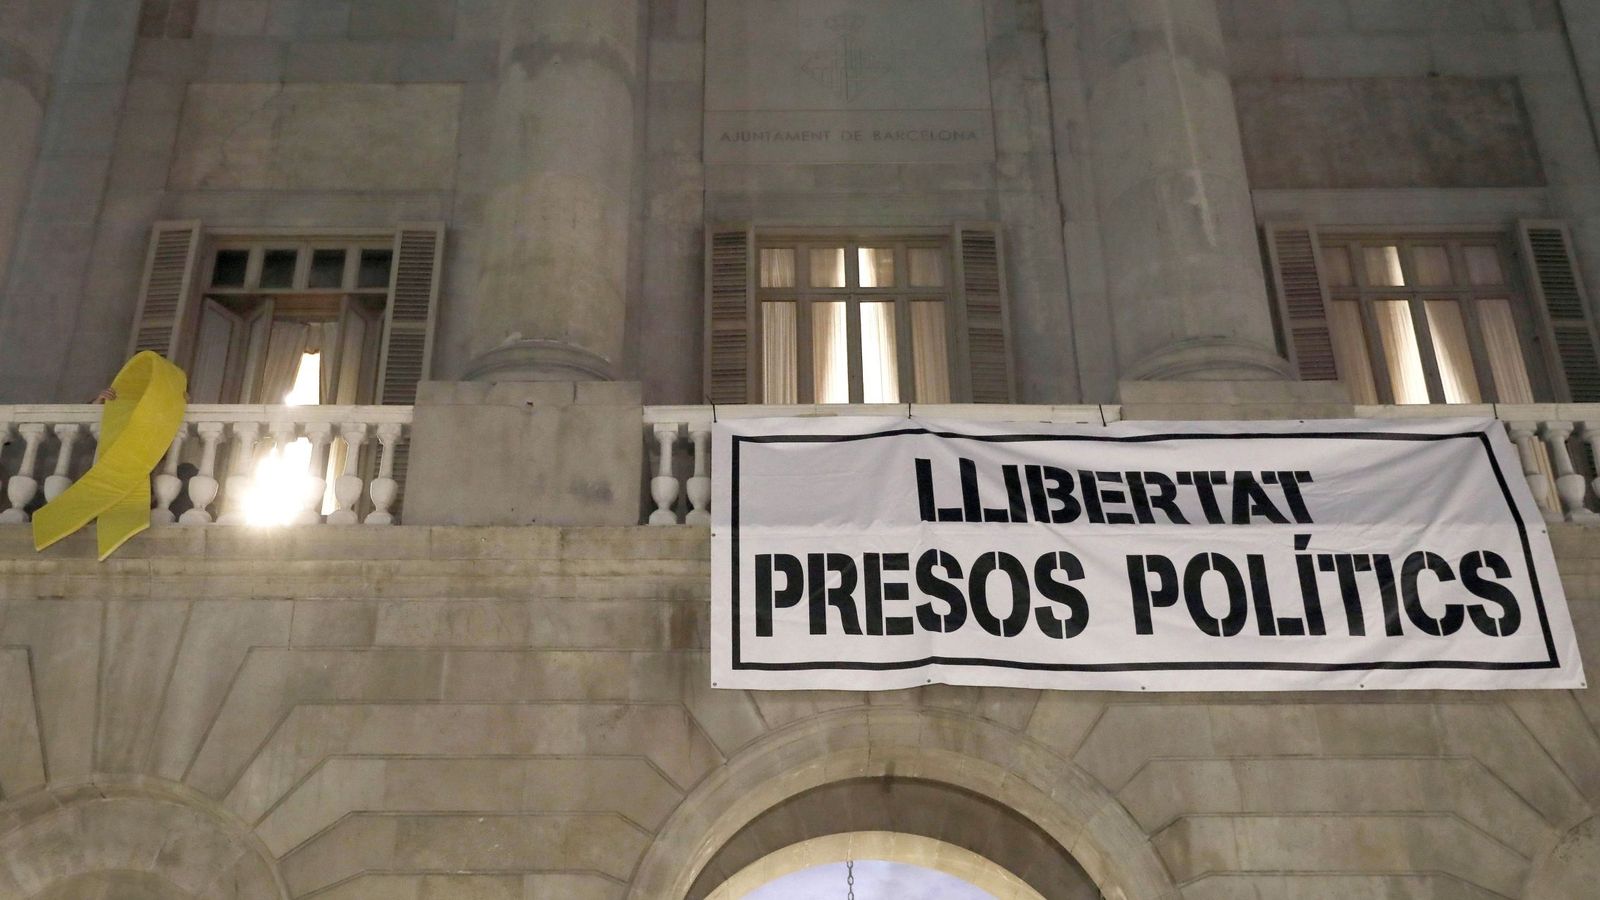 Foto: Vista del balcón del Ayuntamiento de Barcelona tras colgar la pancarta de "Llibertat presos politics". (EFE)